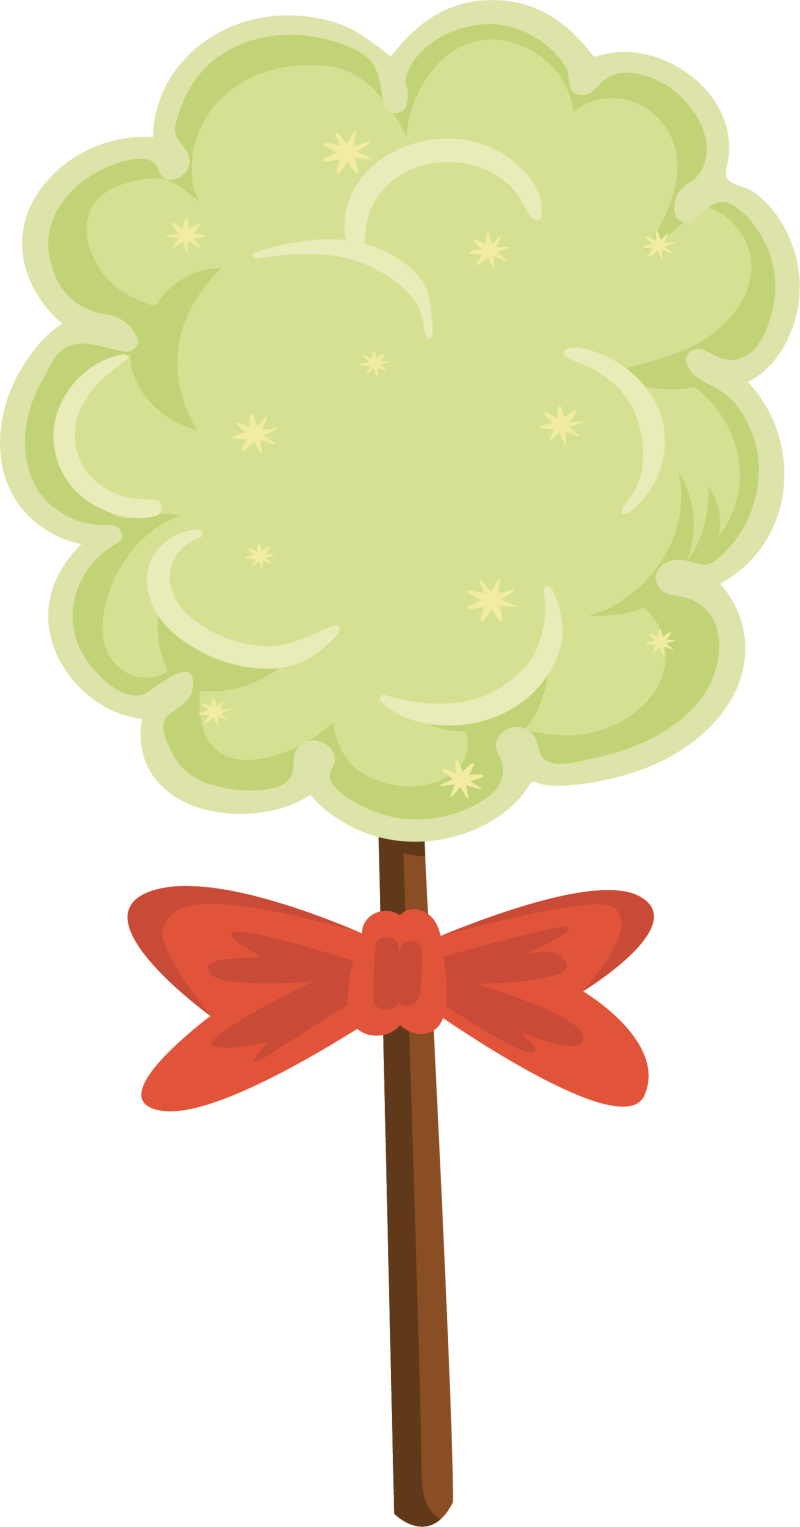 棉花糖棉花糖,用棉花糖PNG剪贴画装饰的蝴蝶结食品,装饰,圣诞节装图片